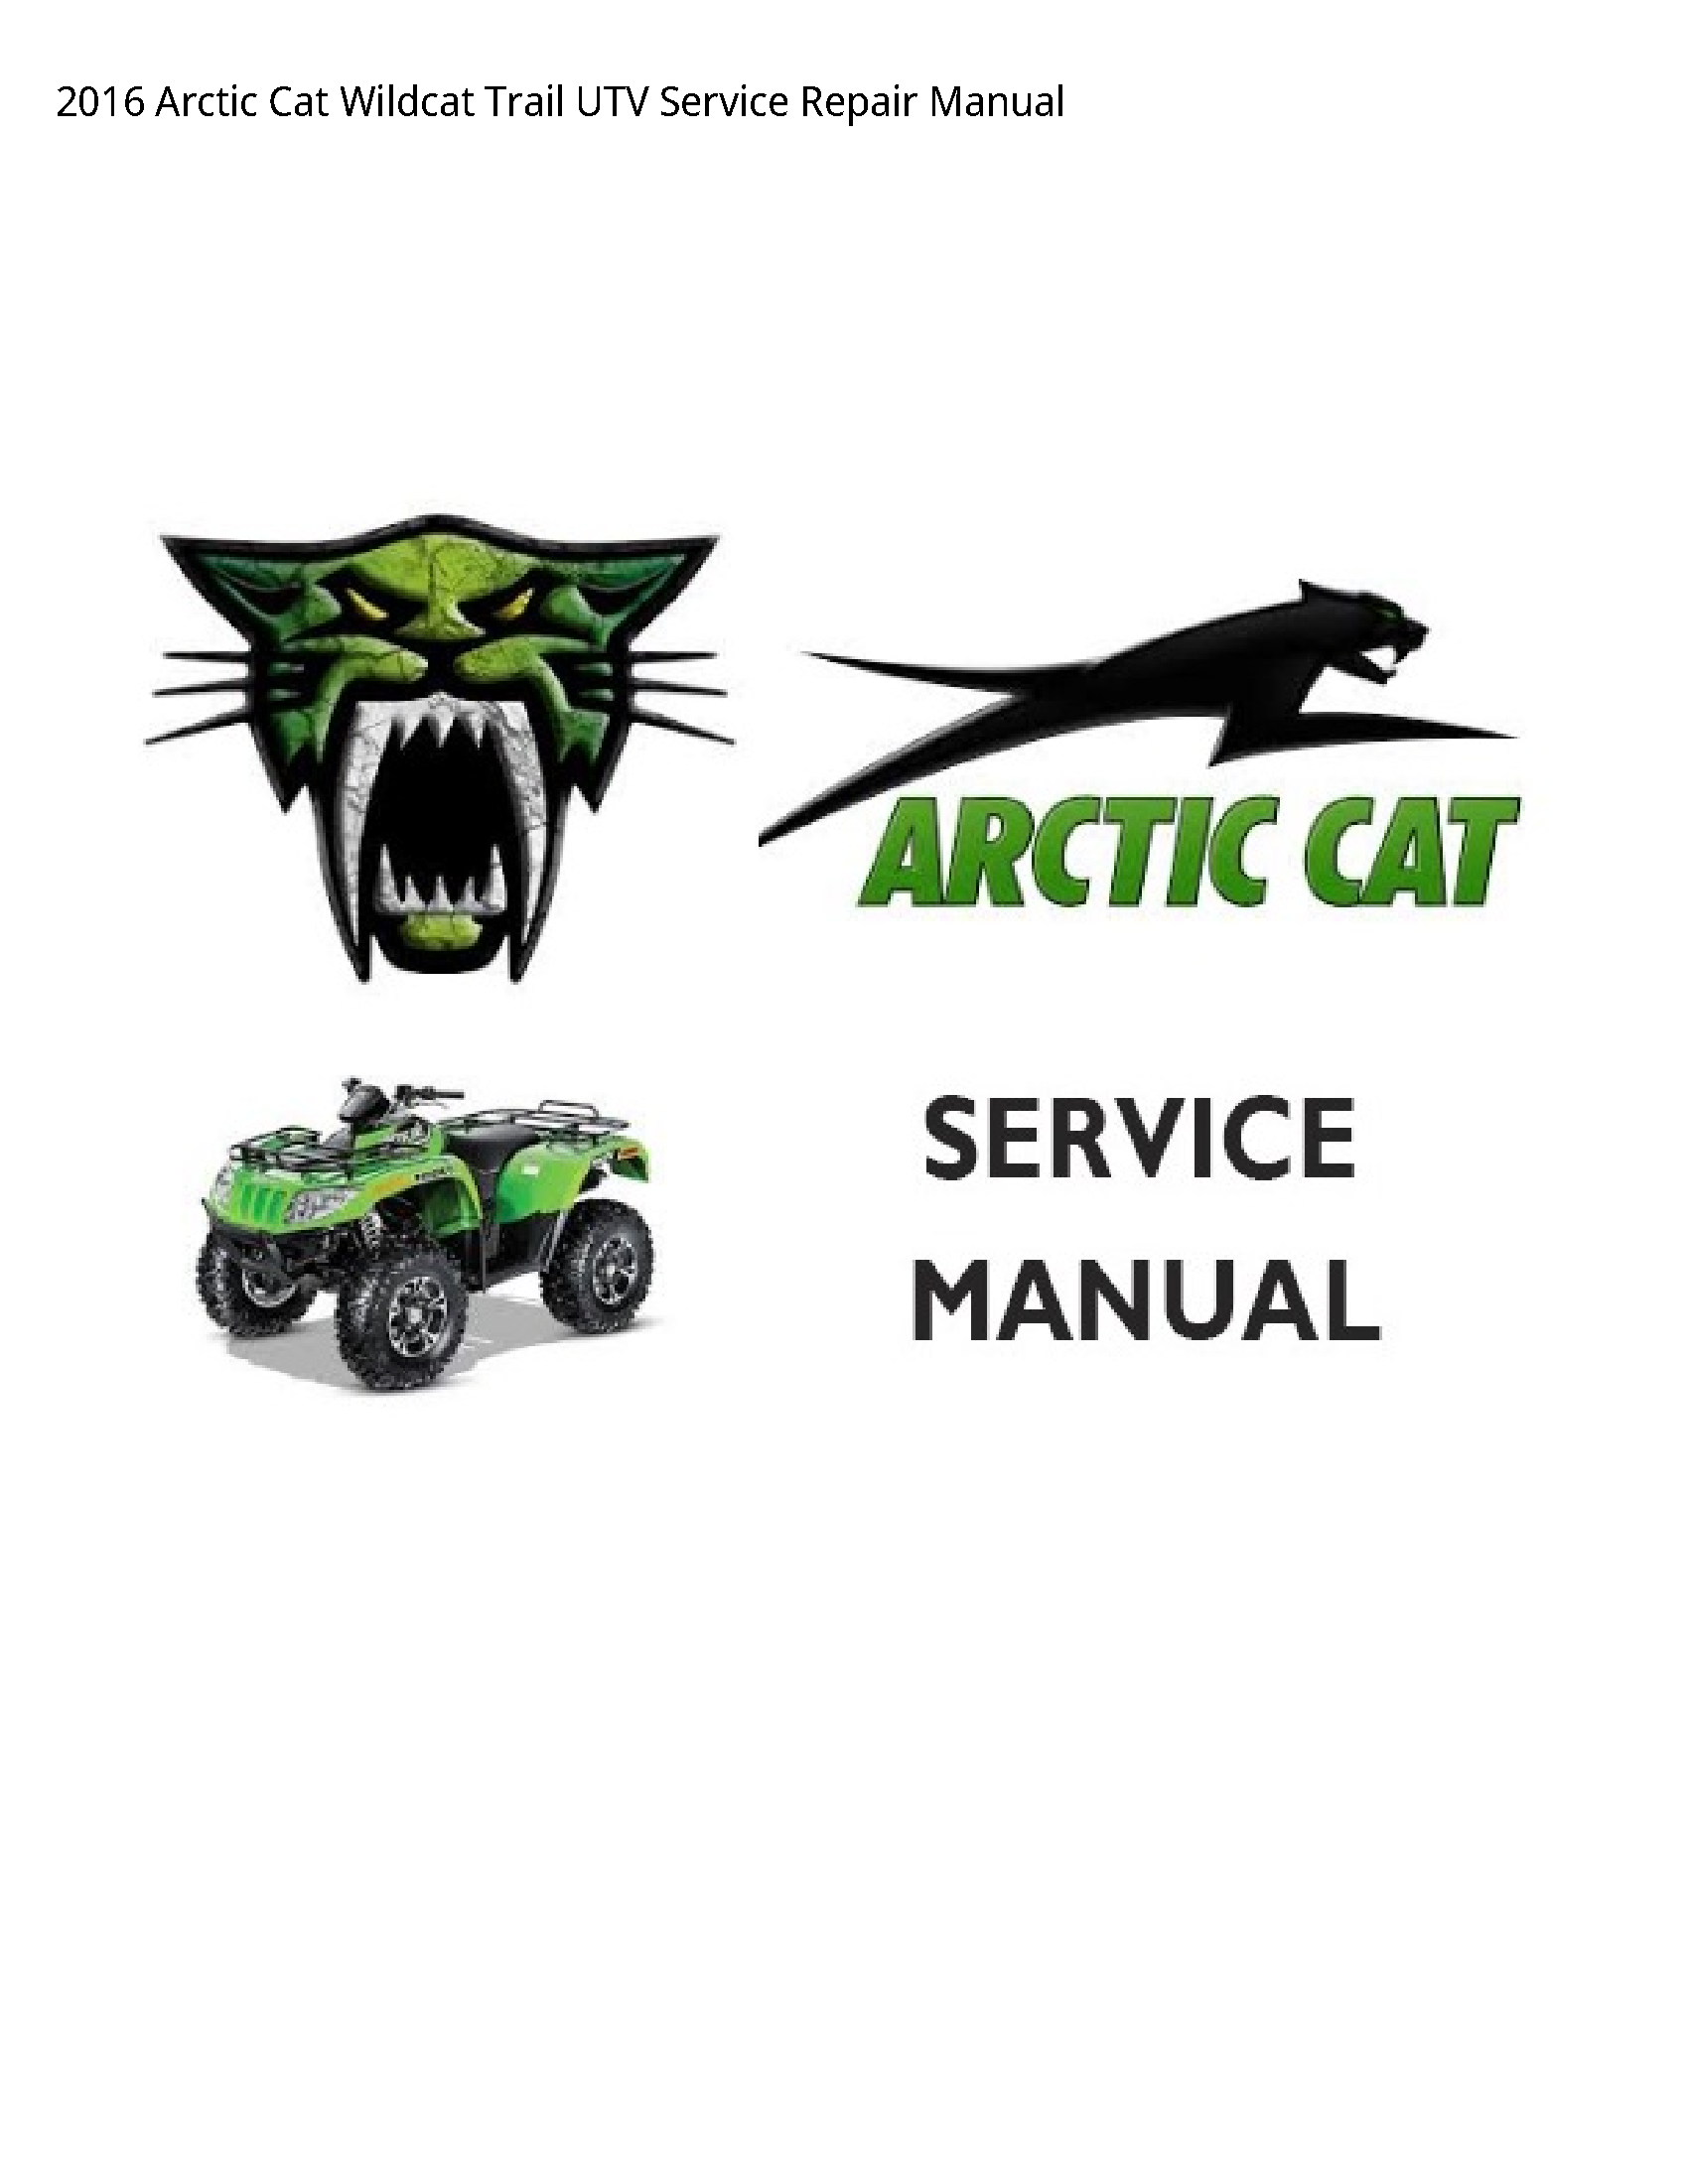 Arctic Cat Wildcat Trail UTV manual